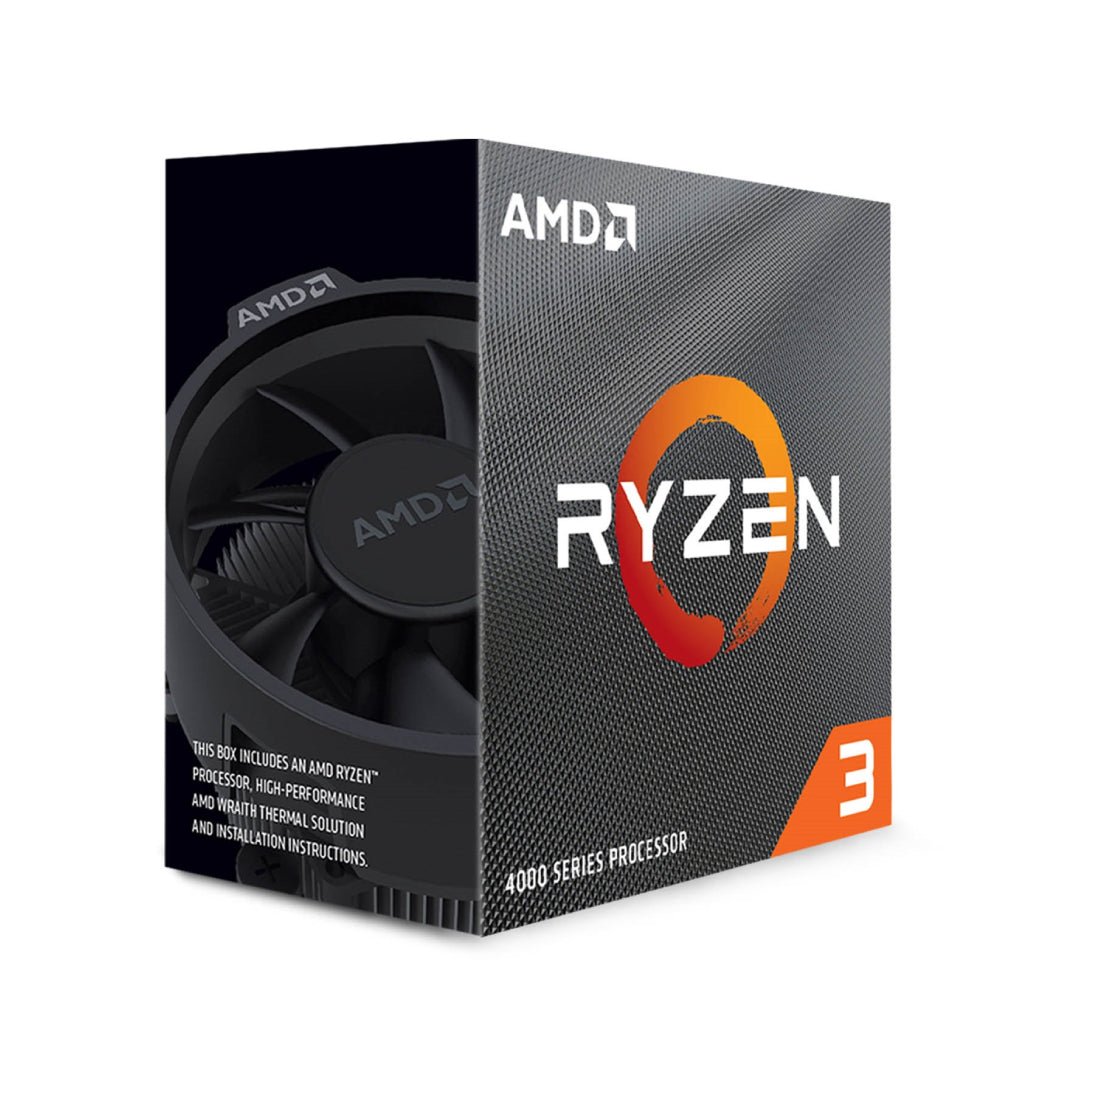 AMD Ryzen 3 4000 Series Renoir Zen 2, Quad-Core, 3.8 GHz AM4 Processor - Store 974 | ستور ٩٧٤